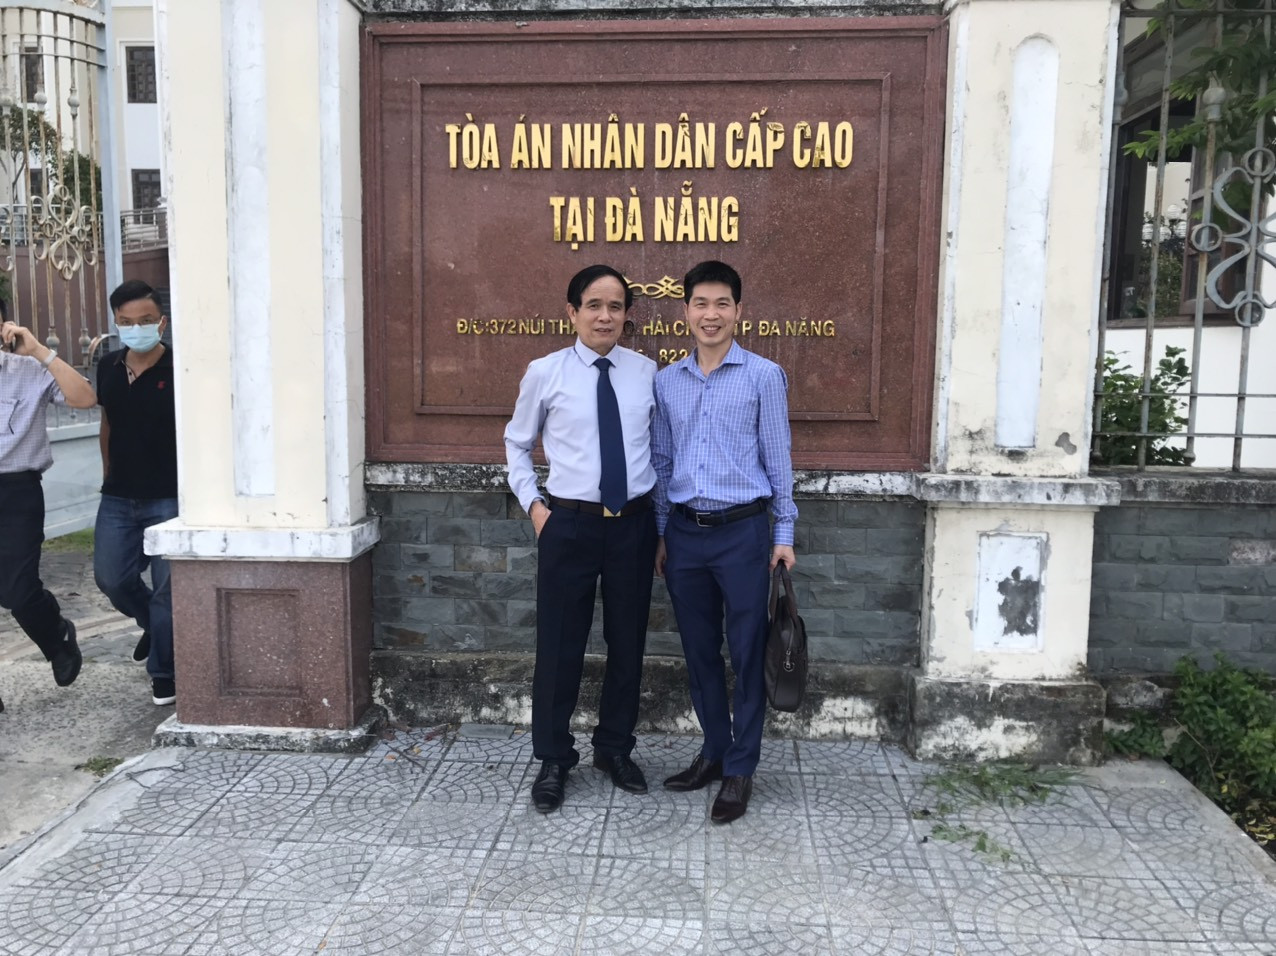 Tòa án nhân dân cấp cao tại Đà Nẵng - Tp Đà Nẵng